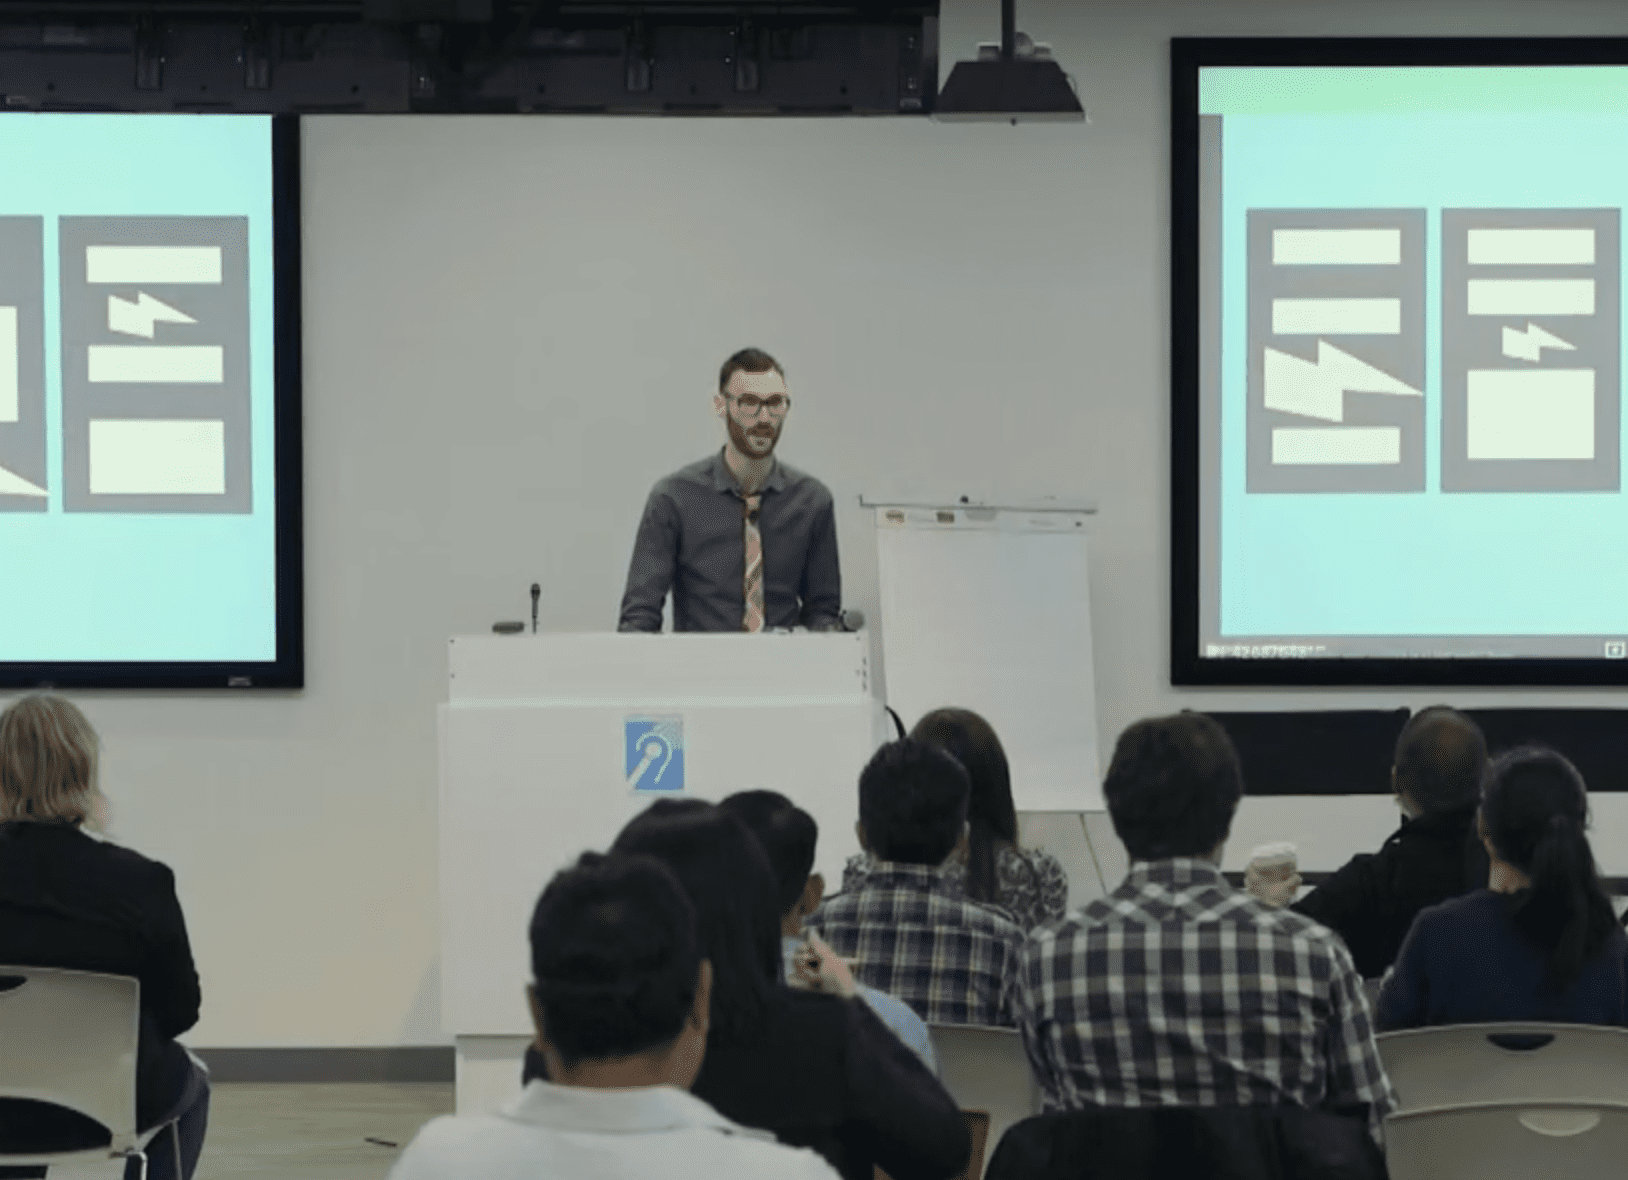 Jake Knapp and John Zeratsky’s Sprint Talk at Google